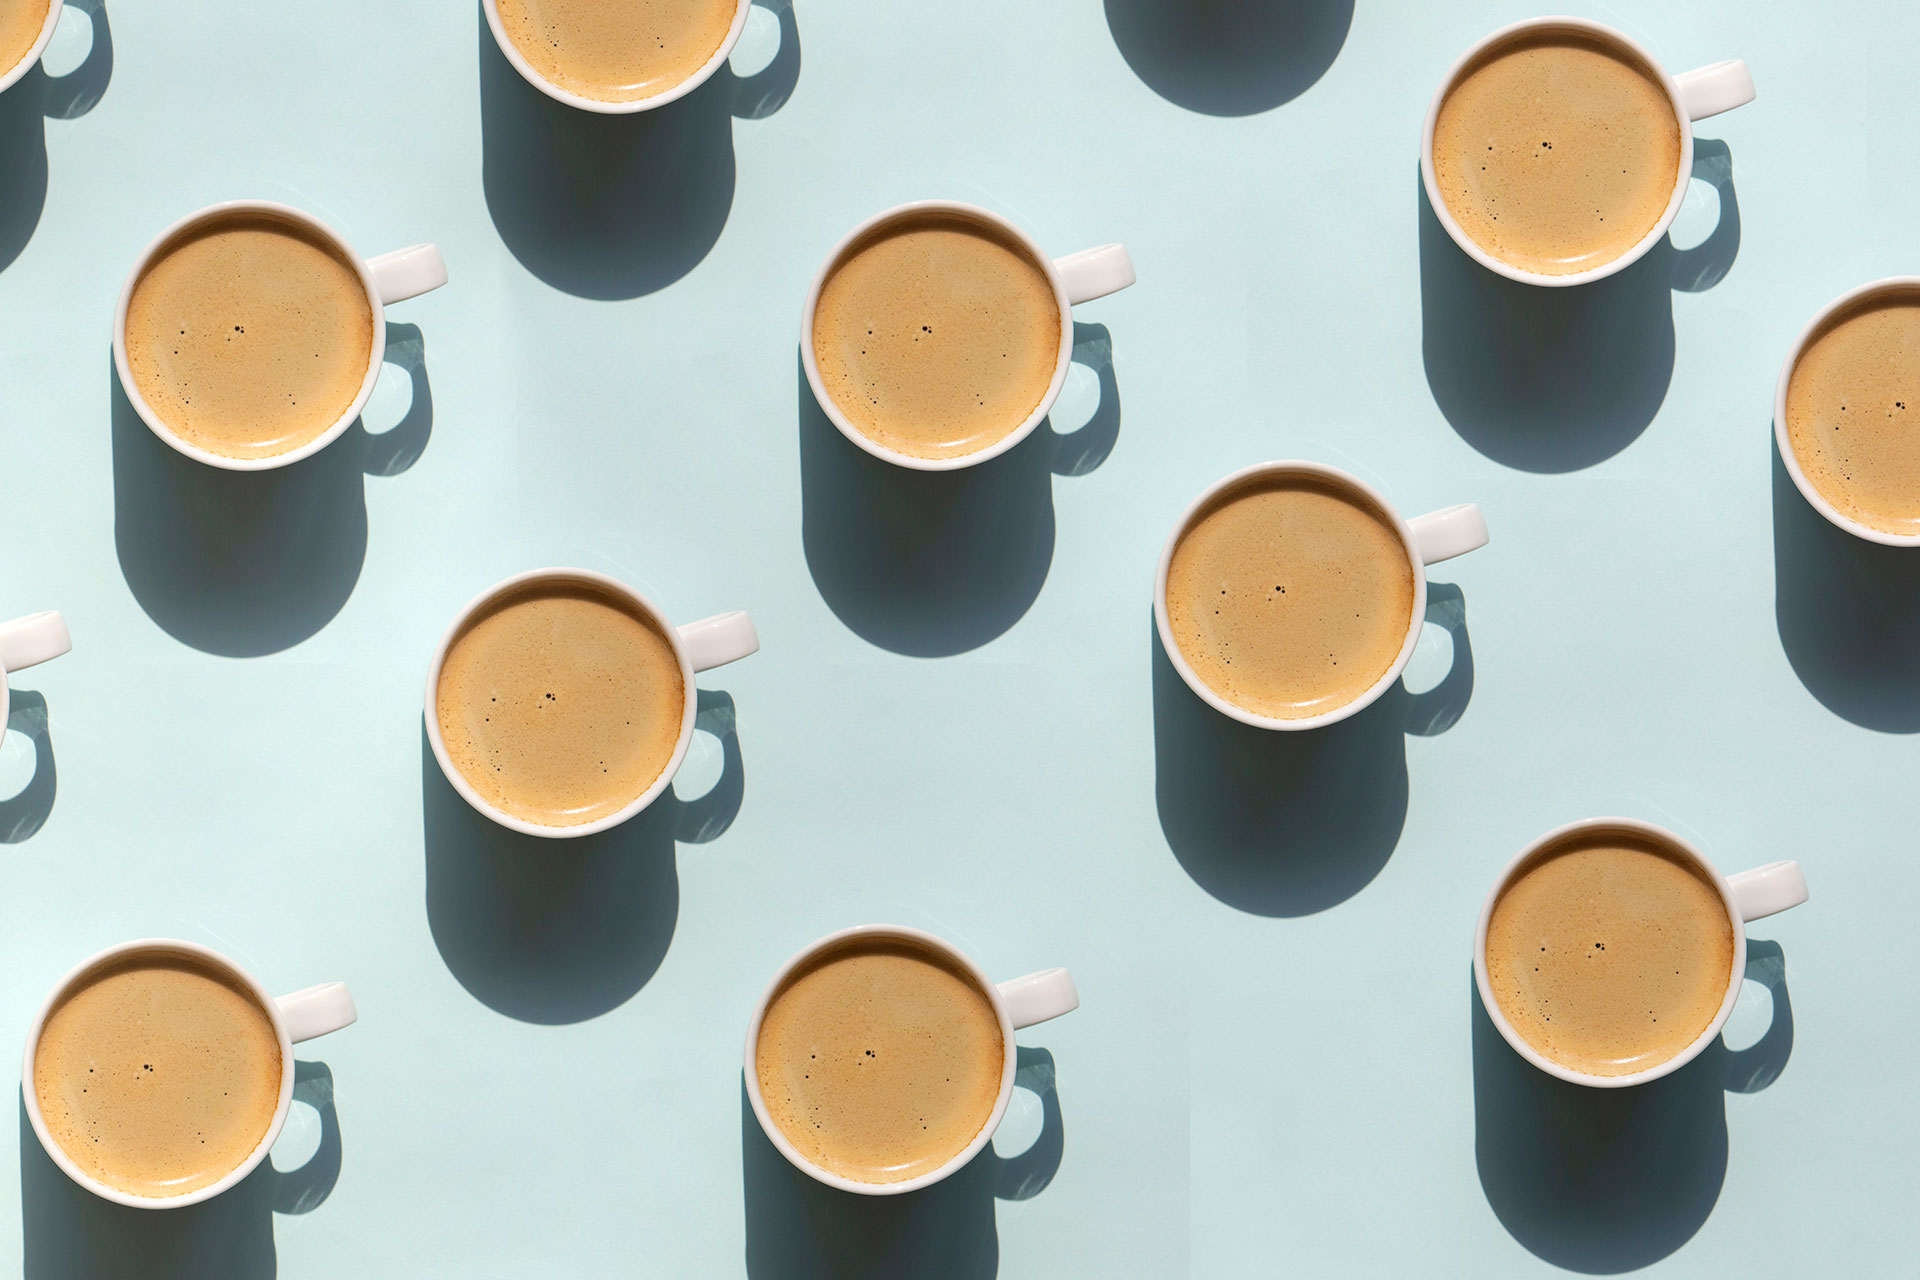 Para aquellos que toman su café solo, consumir tres tazas al día se asoció con los mejores resultados, mientras que aquellos que agregaron azúcar estaban mejor con solo dos tazas (Getty Images)